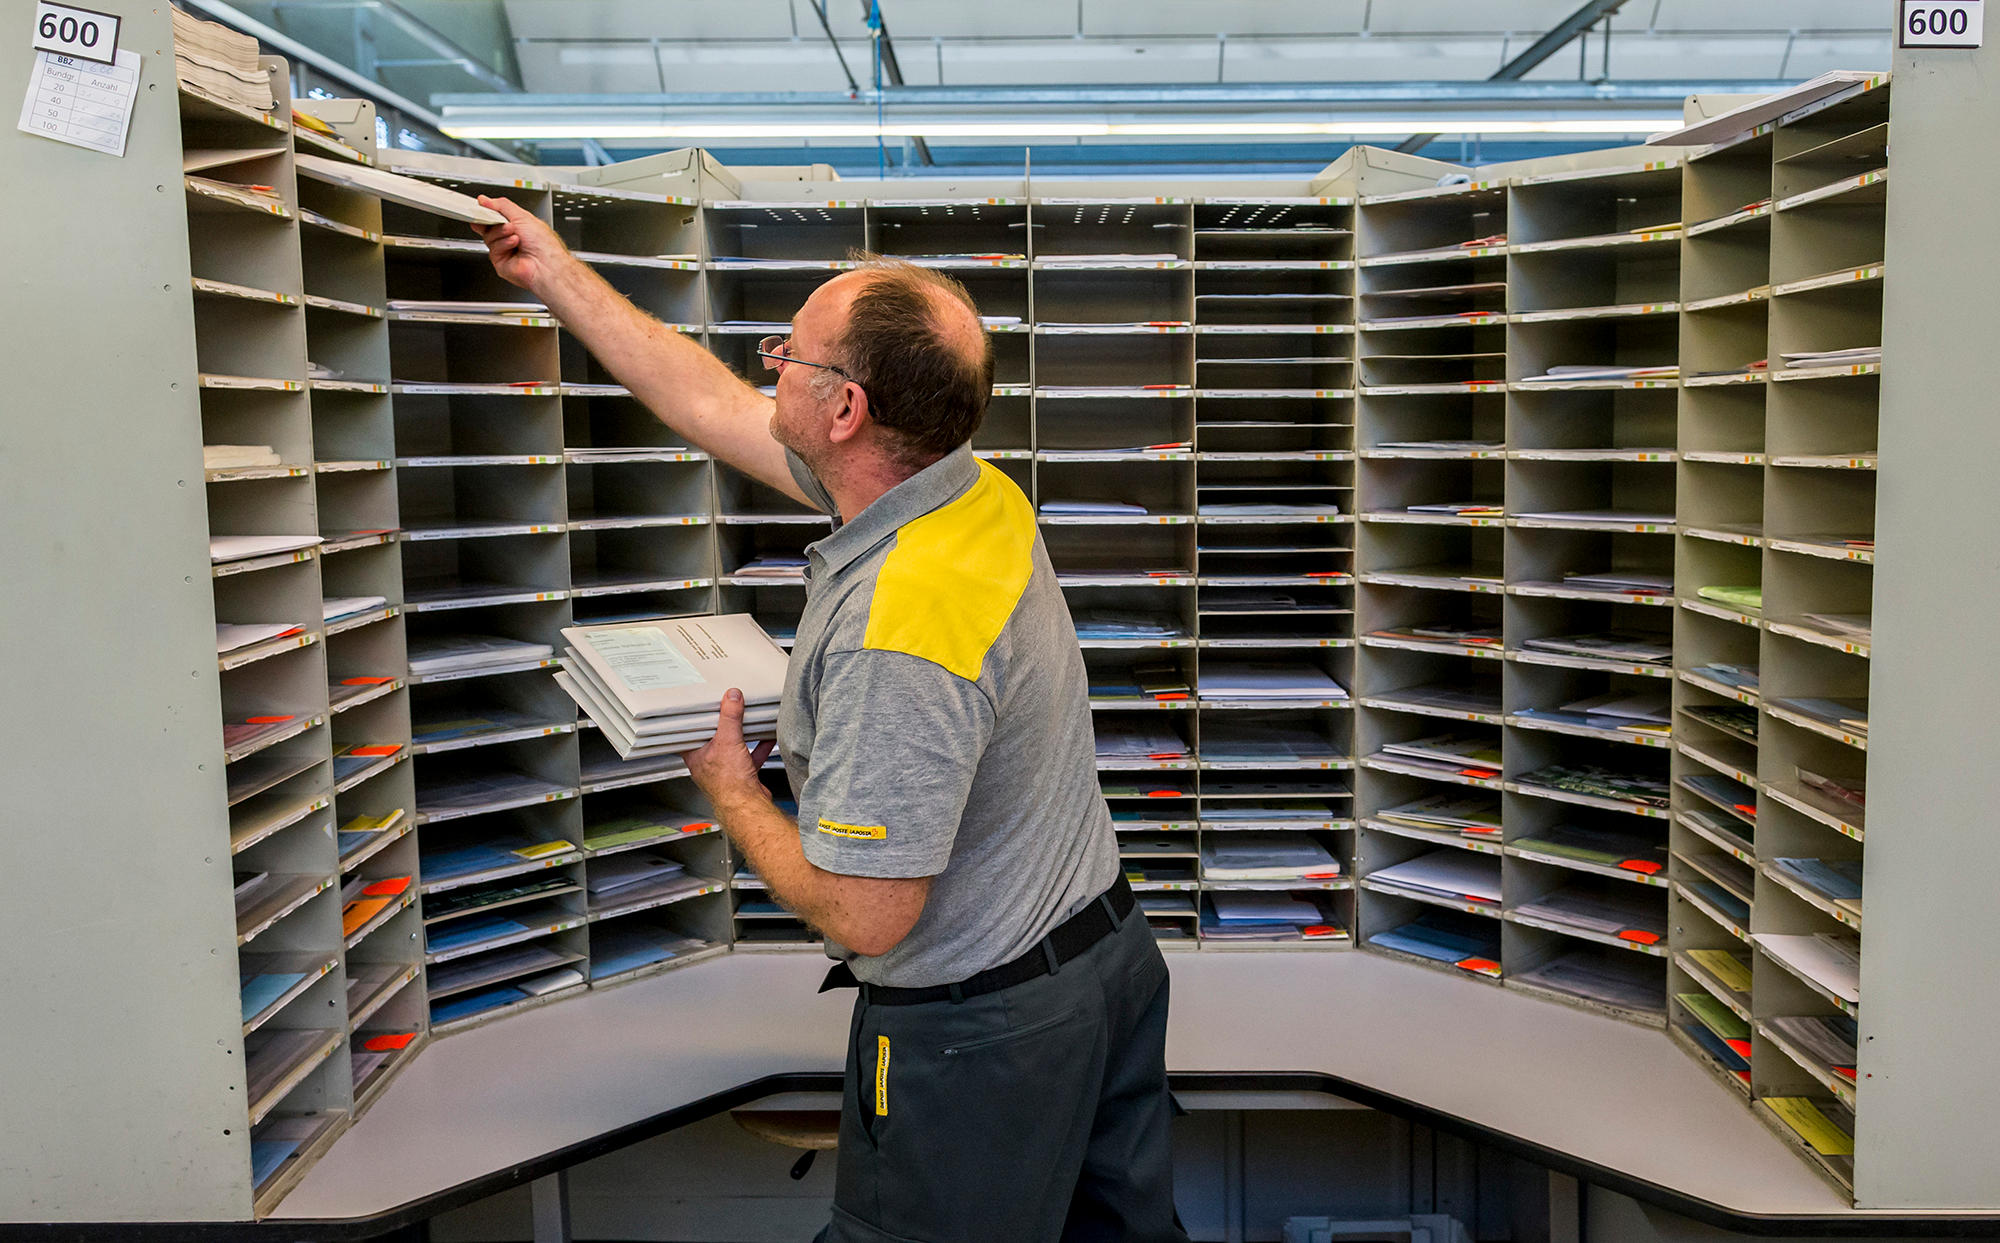 ベルンでは100人の郵便配達員が5日間で50トンの投票書類を配布する